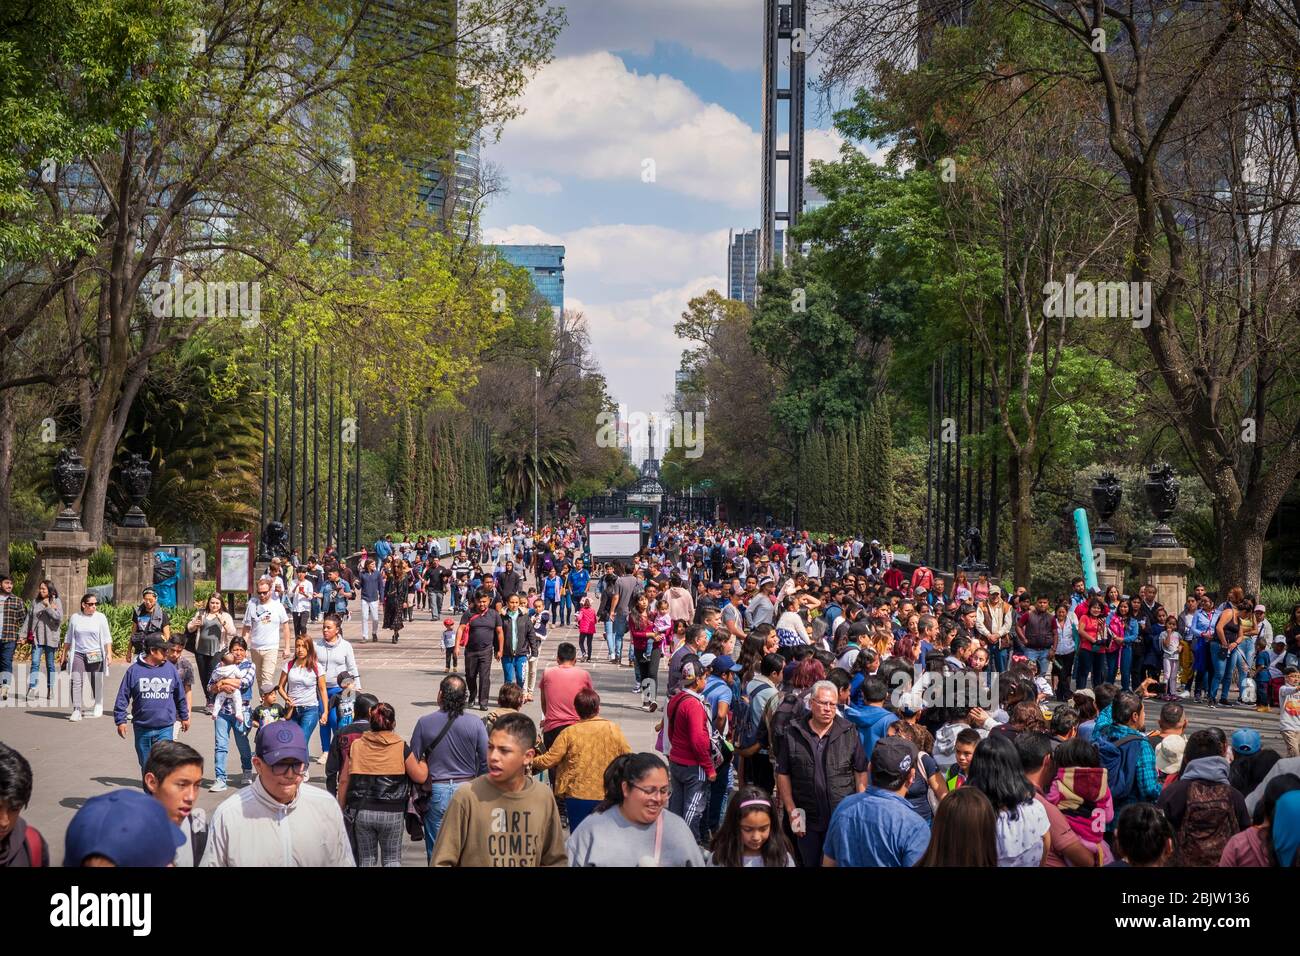 Crowds on Chapultepec Avenue looking towards city near Chapultepec Park, Mexico City, Mexico Stock Photo